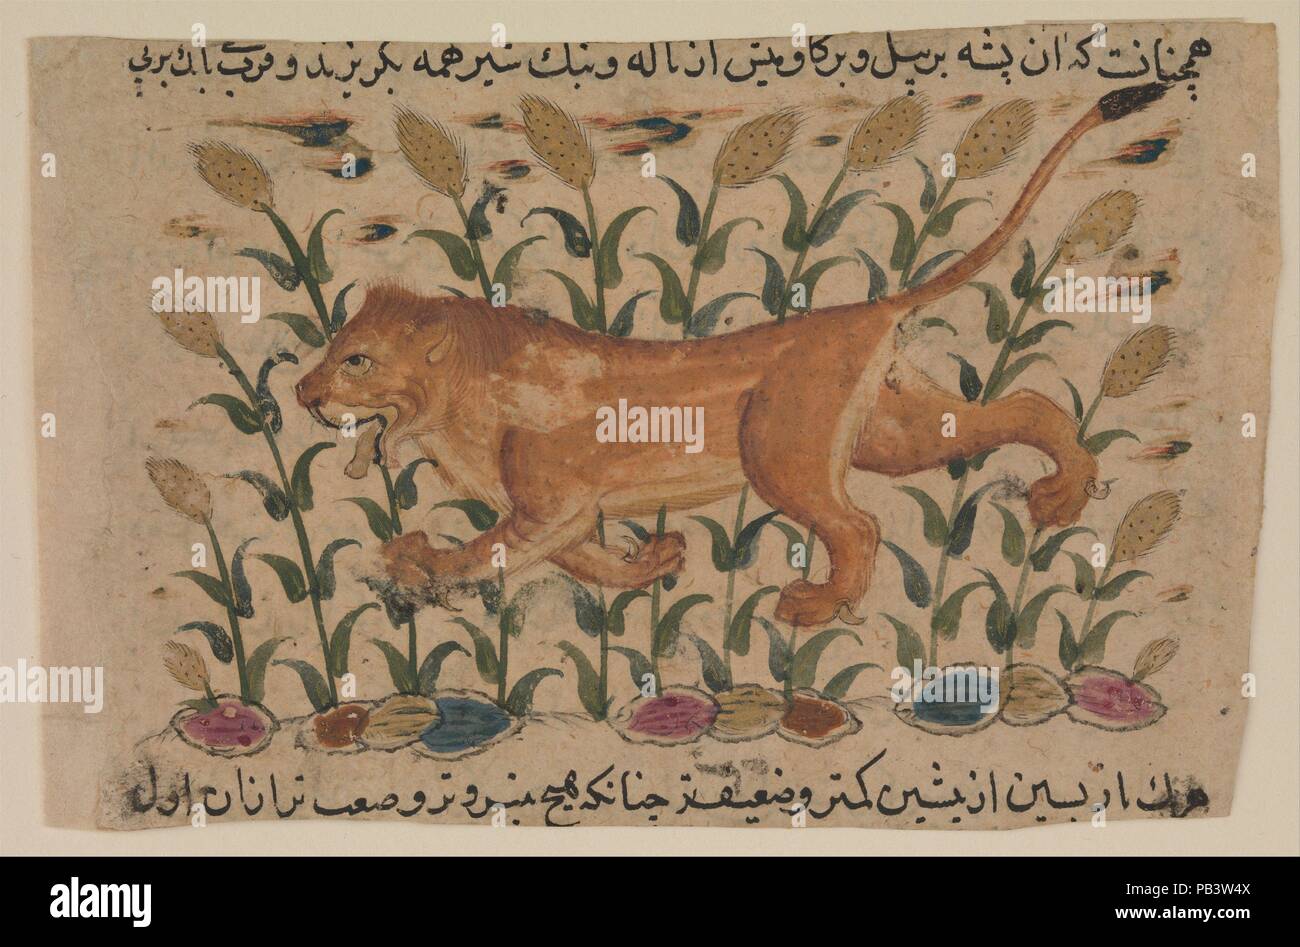 ' Un leone", Folio da un disperso Nuzhatnama-i 'Ala'io di Shahmardan ibn Abi'Khayr l. Autore: Shamardan ibn Abi 'l Khayr attivo (XI secolo). Dimensioni: Pagina: 3 a. (7.6 cm) W. 4 1/8a. (10,5cm) tappeto: H. 14 1/4 in. (36,2 cm) W. 19 1/4 in. (48,9 cm): Telaio H. 16 3/4 in. (42,5 cm) W. 21 3/4 in. (55,2 cm). Data: inizio del XVII secolo. Il testo enciclopedico da cui questa pagina è stata scritta tra il 1095 e il 1119 e si compone di due parti, di cui una dedicata ai tre regni della natura, inclusi gli esseri umani, gli animali, l'agricoltura e i minerali e gli altri per le varie scienze e pseudosciences. Foto Stock